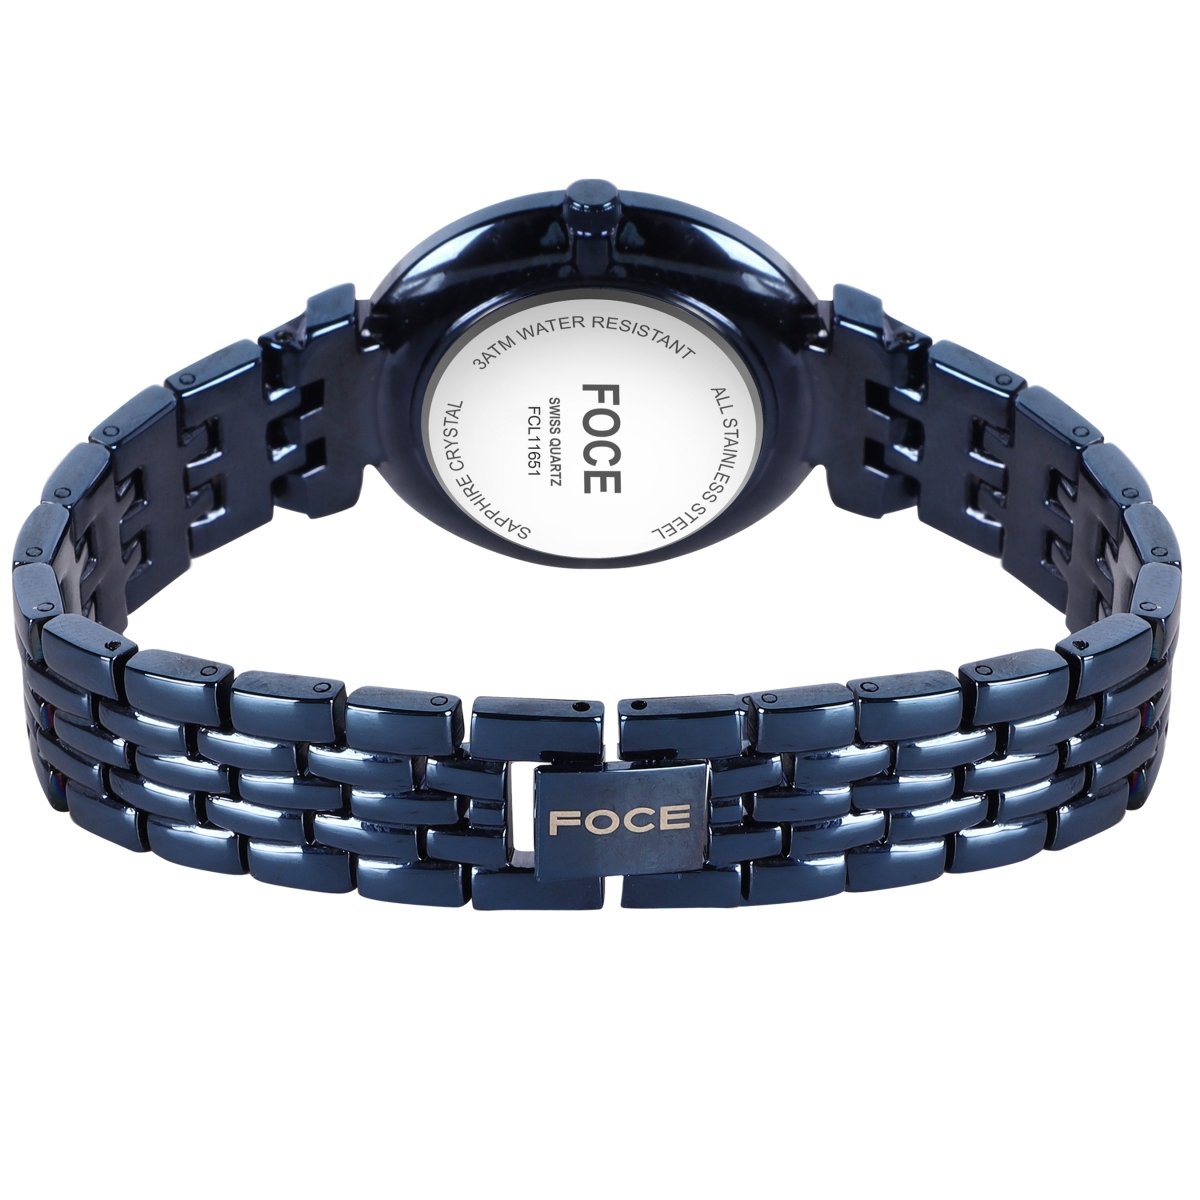 Foce - Buy Foce Watches for Men & Women Online | Myntra